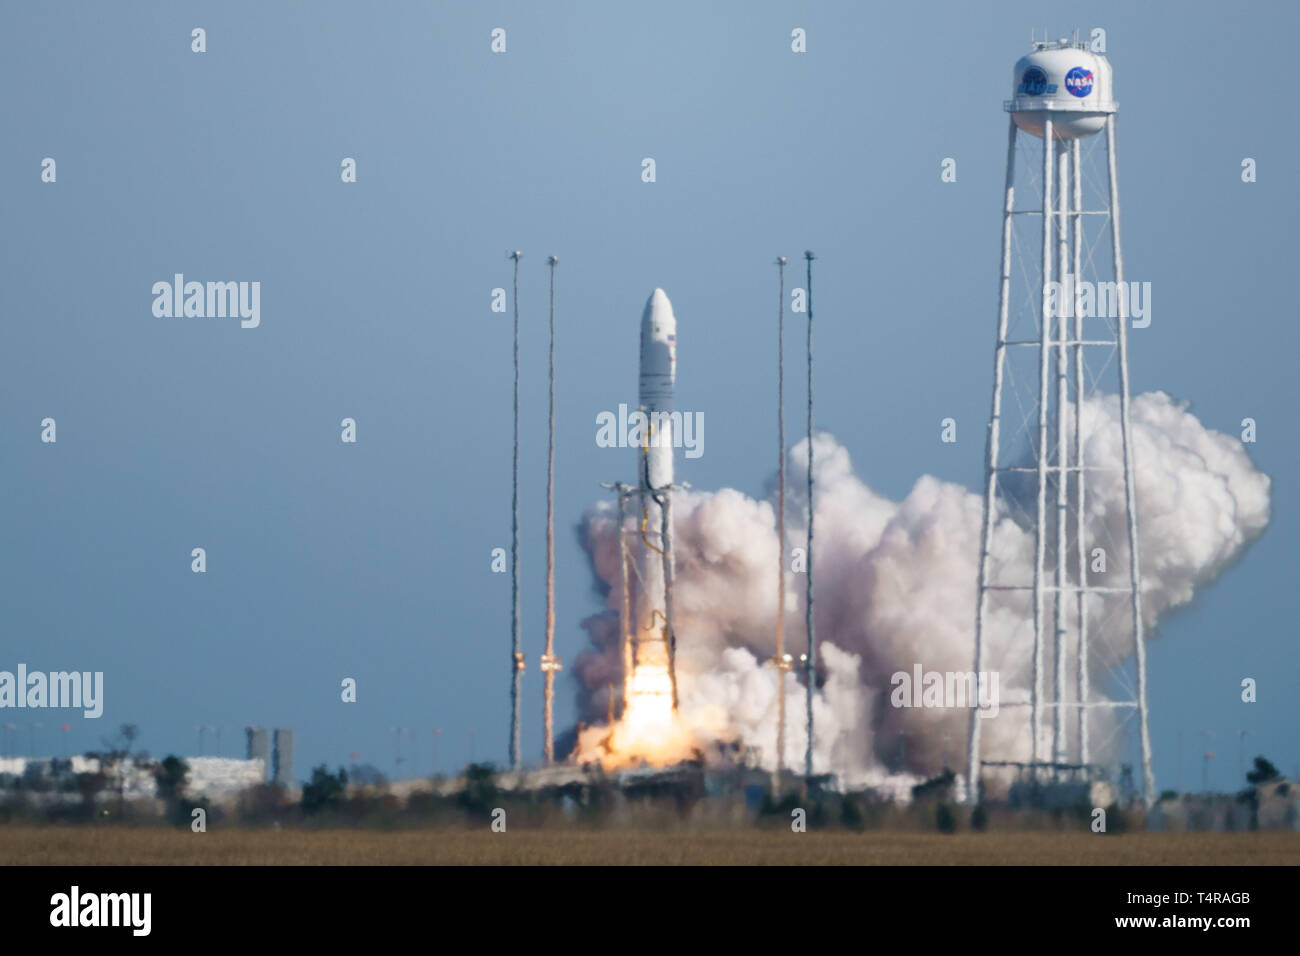 En la Isla Wallops, Virginia, EE.UU. 17 abr, 2019. El cohete Antares Cygnus llevando la nave espacial de carga se levanta desde las Instalaciones de Vuelo Wallops de la NASA en Wallops Island, Virginia, en los Estados Unidos, el 17 de abril de 2019. Se lanzó un cohete de EE.UU. este miércoles a partir de las Instalaciones de Vuelo Wallops de la NASA en la Costa Oriental de Virginia, transportar carga con la agencia espacial la misión de reabastecimiento de la Estación Espacial Internacional (ISS). El Antares cohete construido por Northrop Grumman levantado a las 4:46 P.M. EDT, llevando el Cygnus naves espaciales de carga a la ISS. Crédito: Xinhua/Alamy Live News Foto de stock